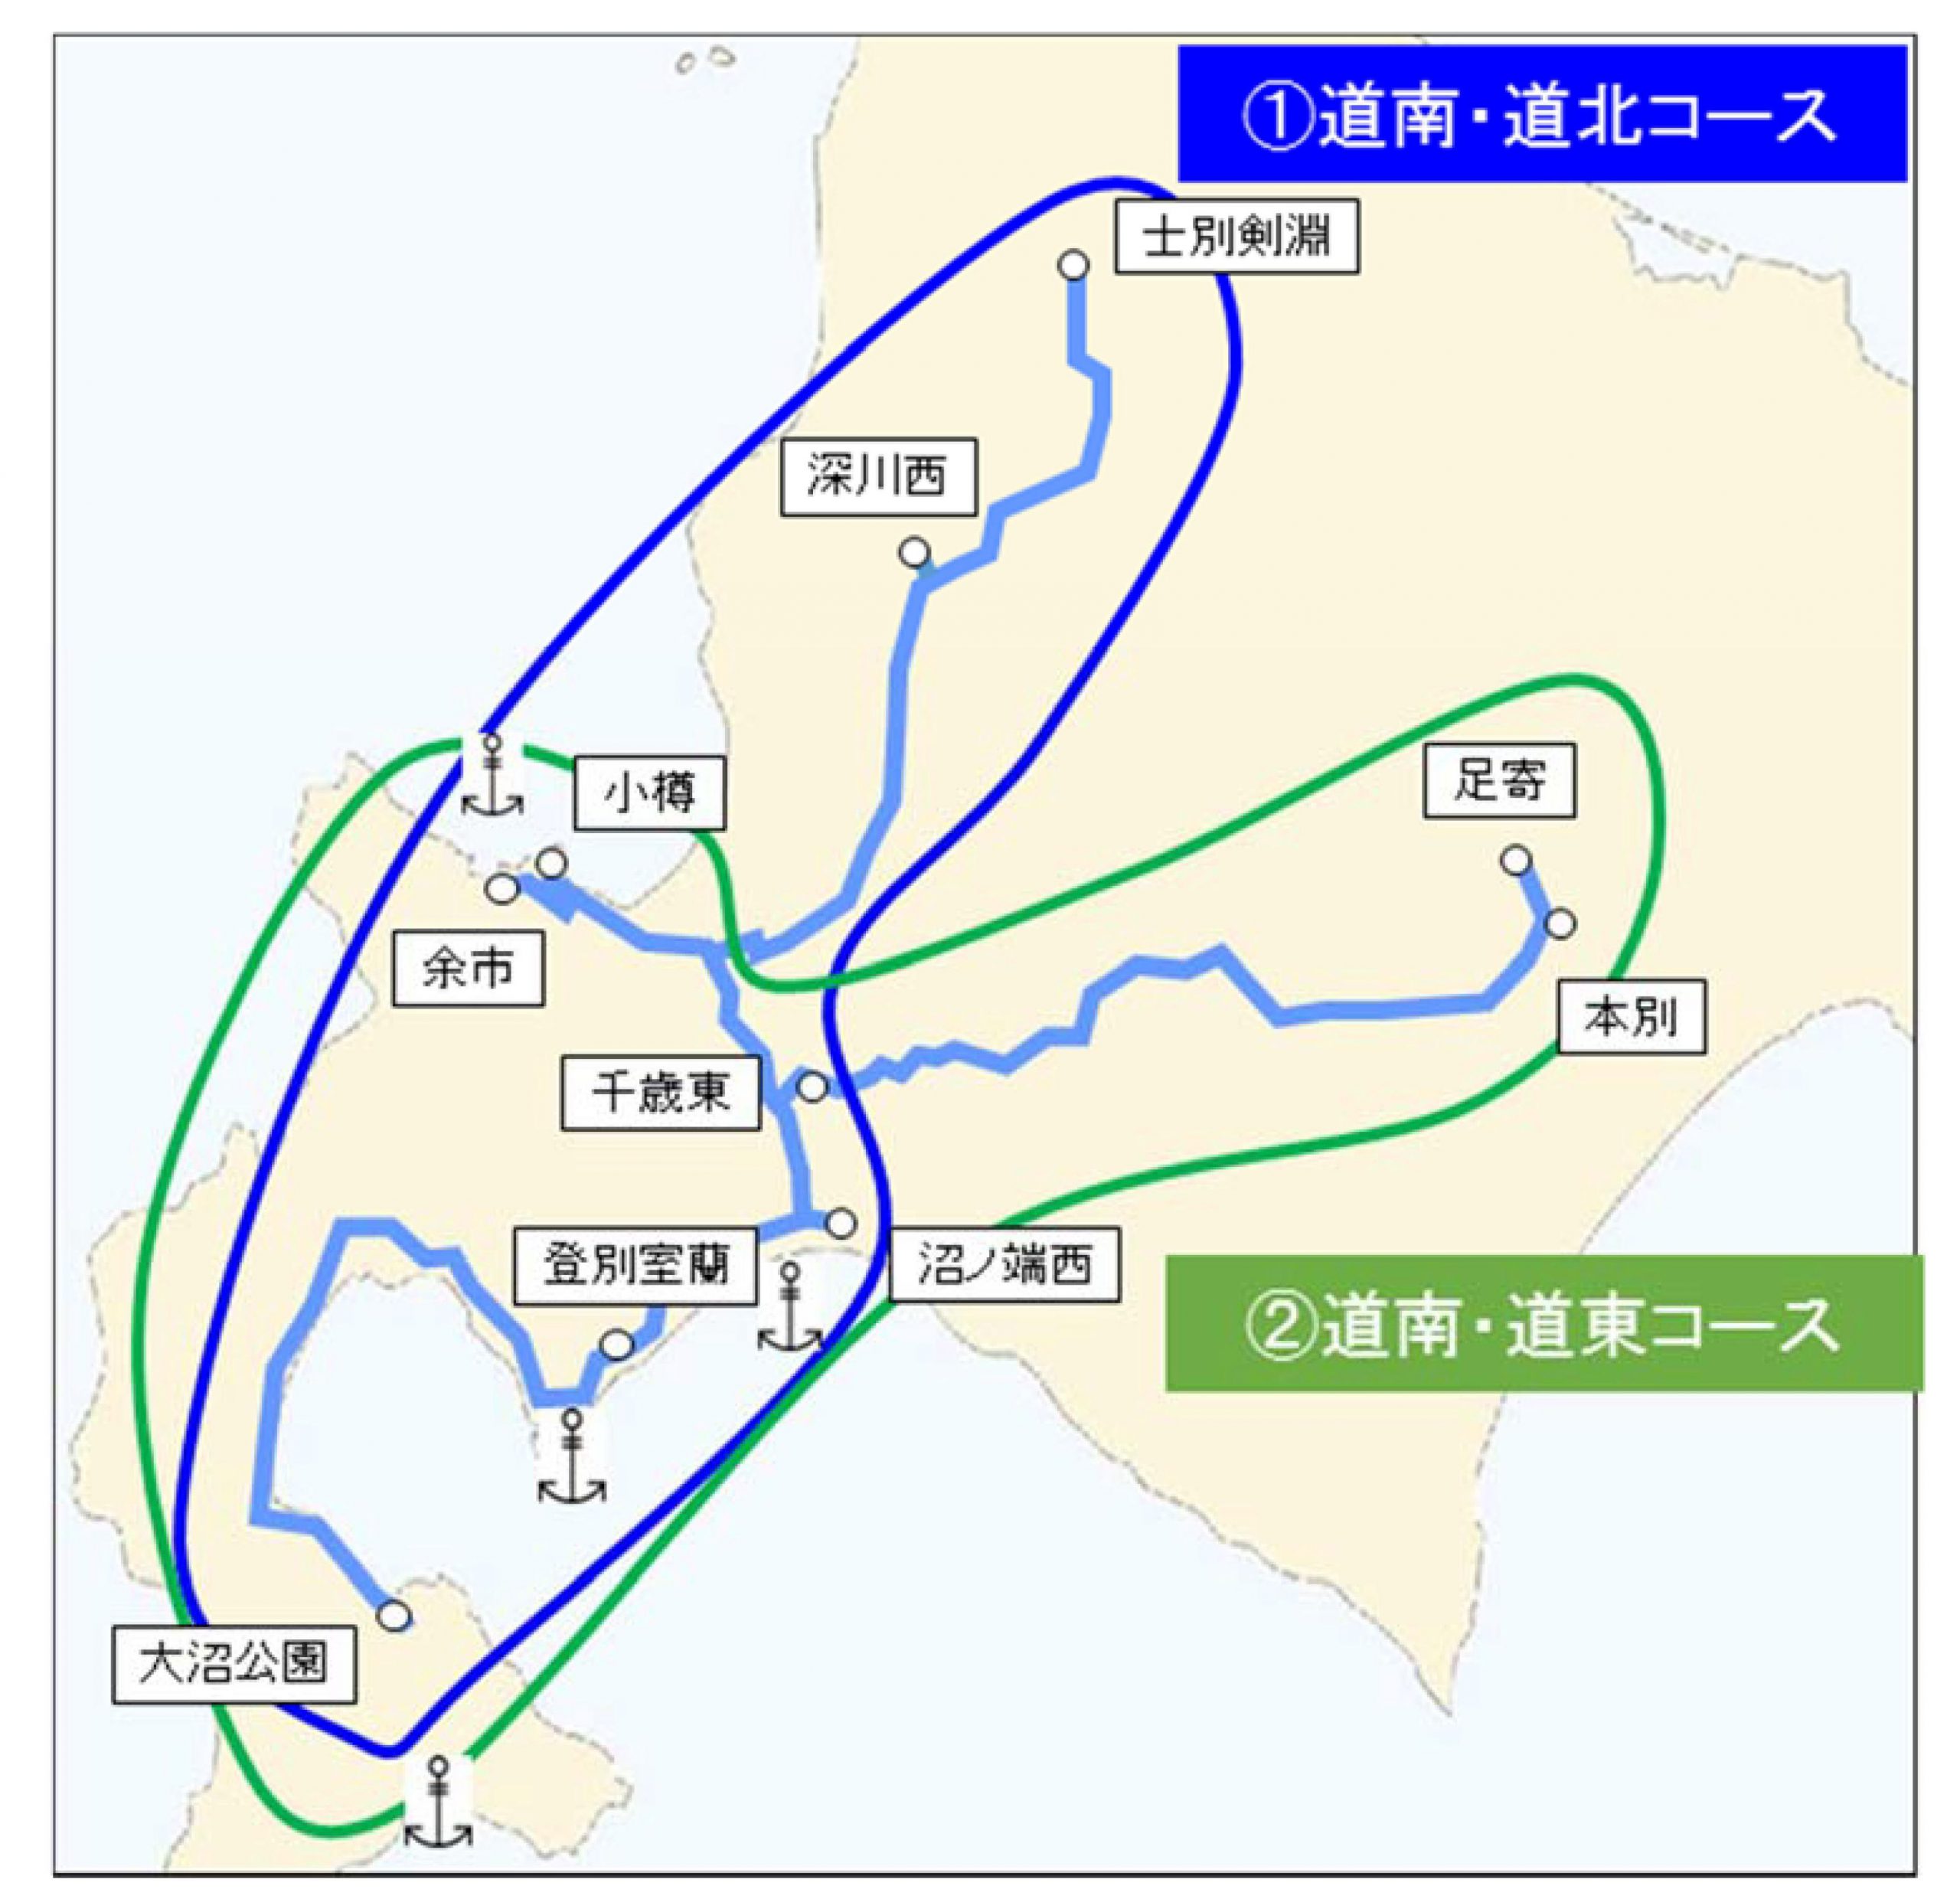 北海道 料金 道路 高速 テック高速道路の旅・北海道央自動車道 料金表